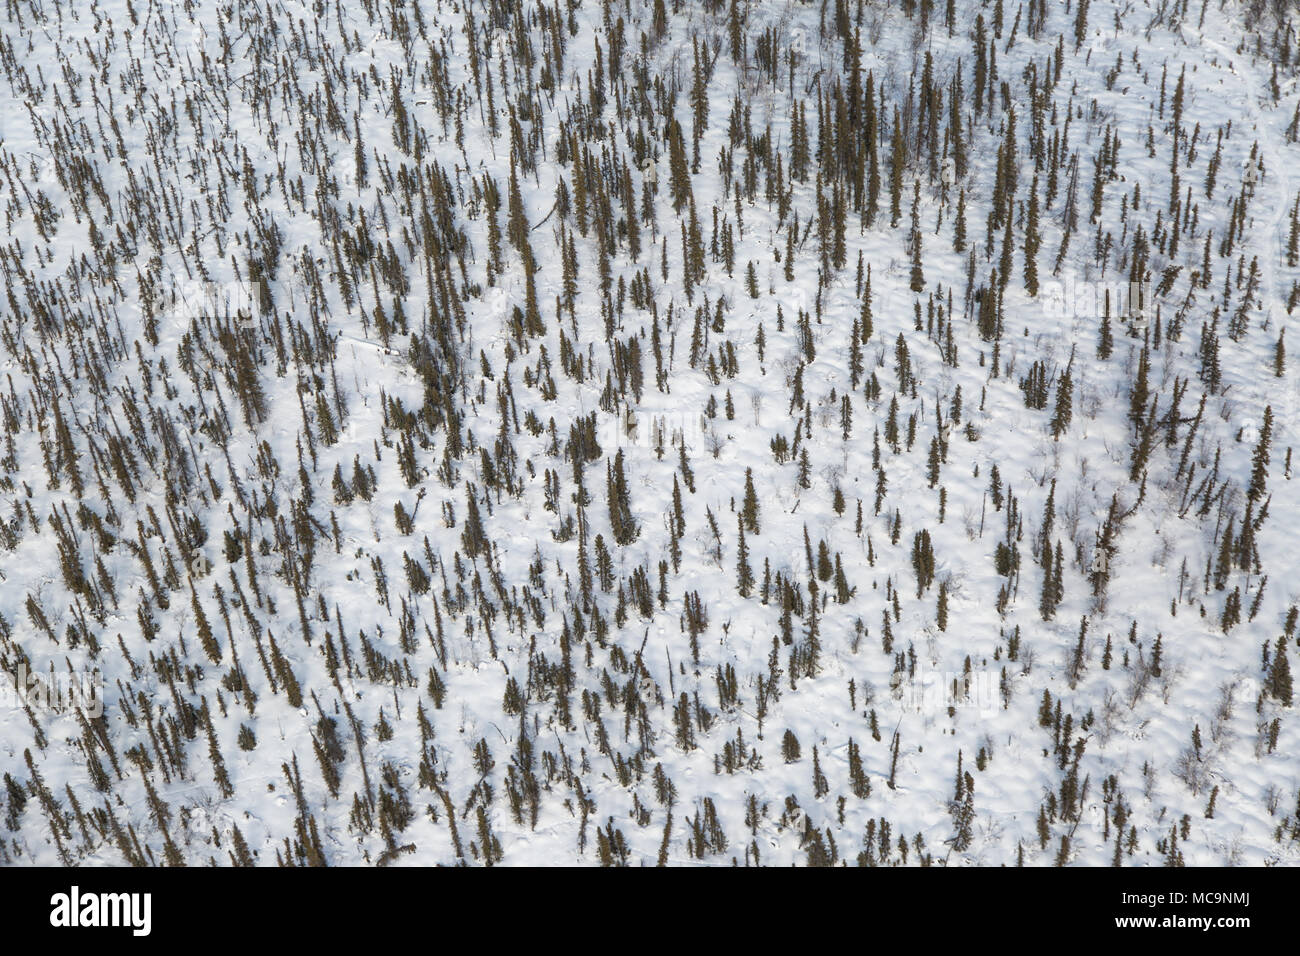 Vue aérienne des épinettes en hiver, à 200 kilomètres au nord du cercle arctique, Inuvik, Territoires du Nord-Ouest, Canada Banque D'Images